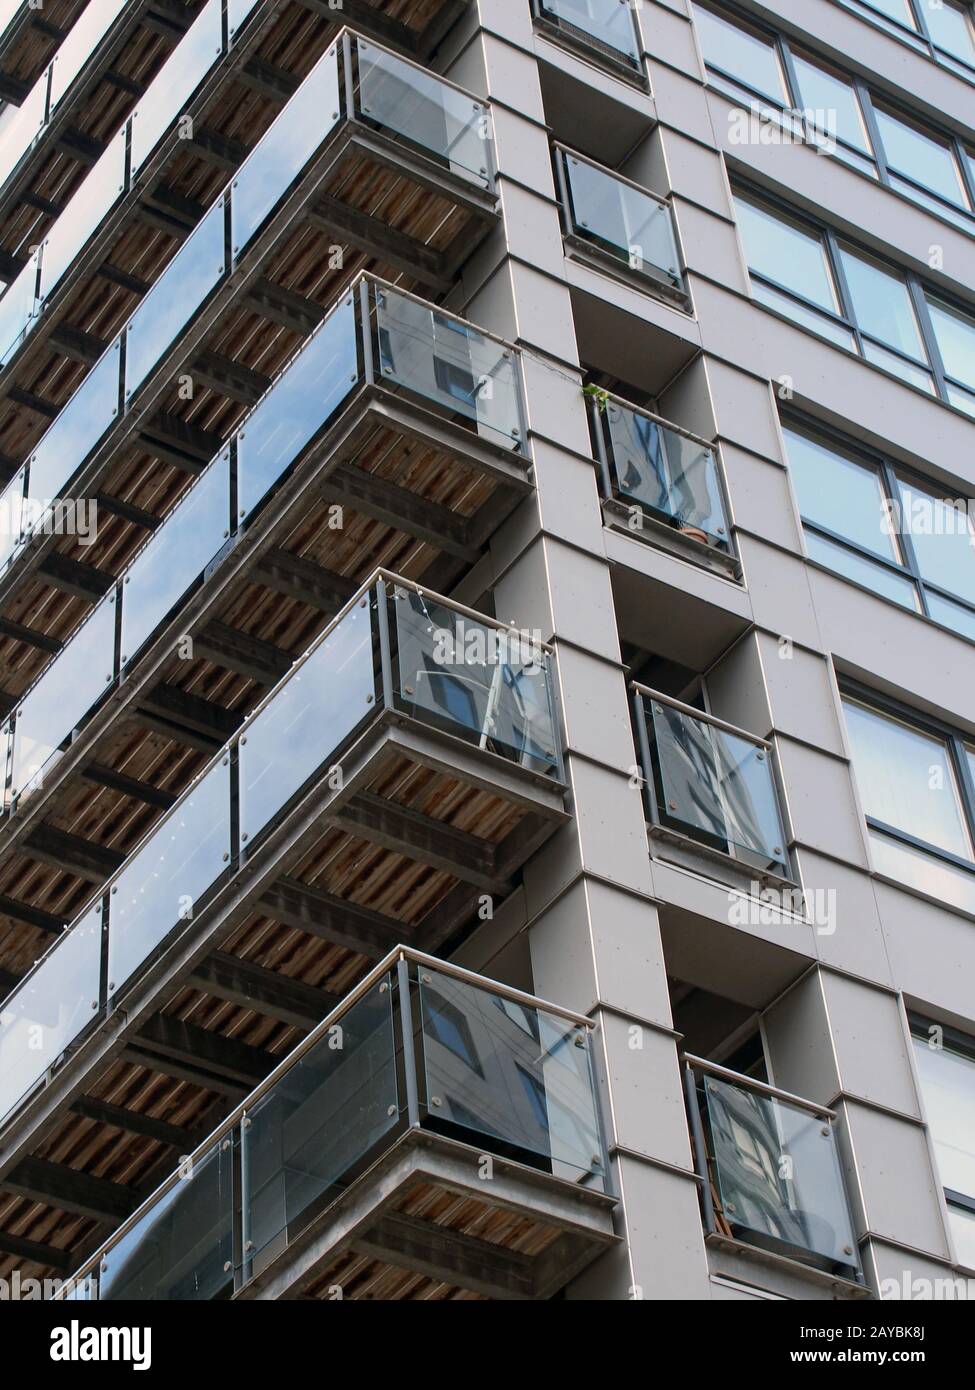 Eckansicht eines modernen städtischen Apartmentgebäudes mit schwarzer Verkleidung und gläsernen Balkonen, die andere Gebäude widerspiegeln Stockfoto